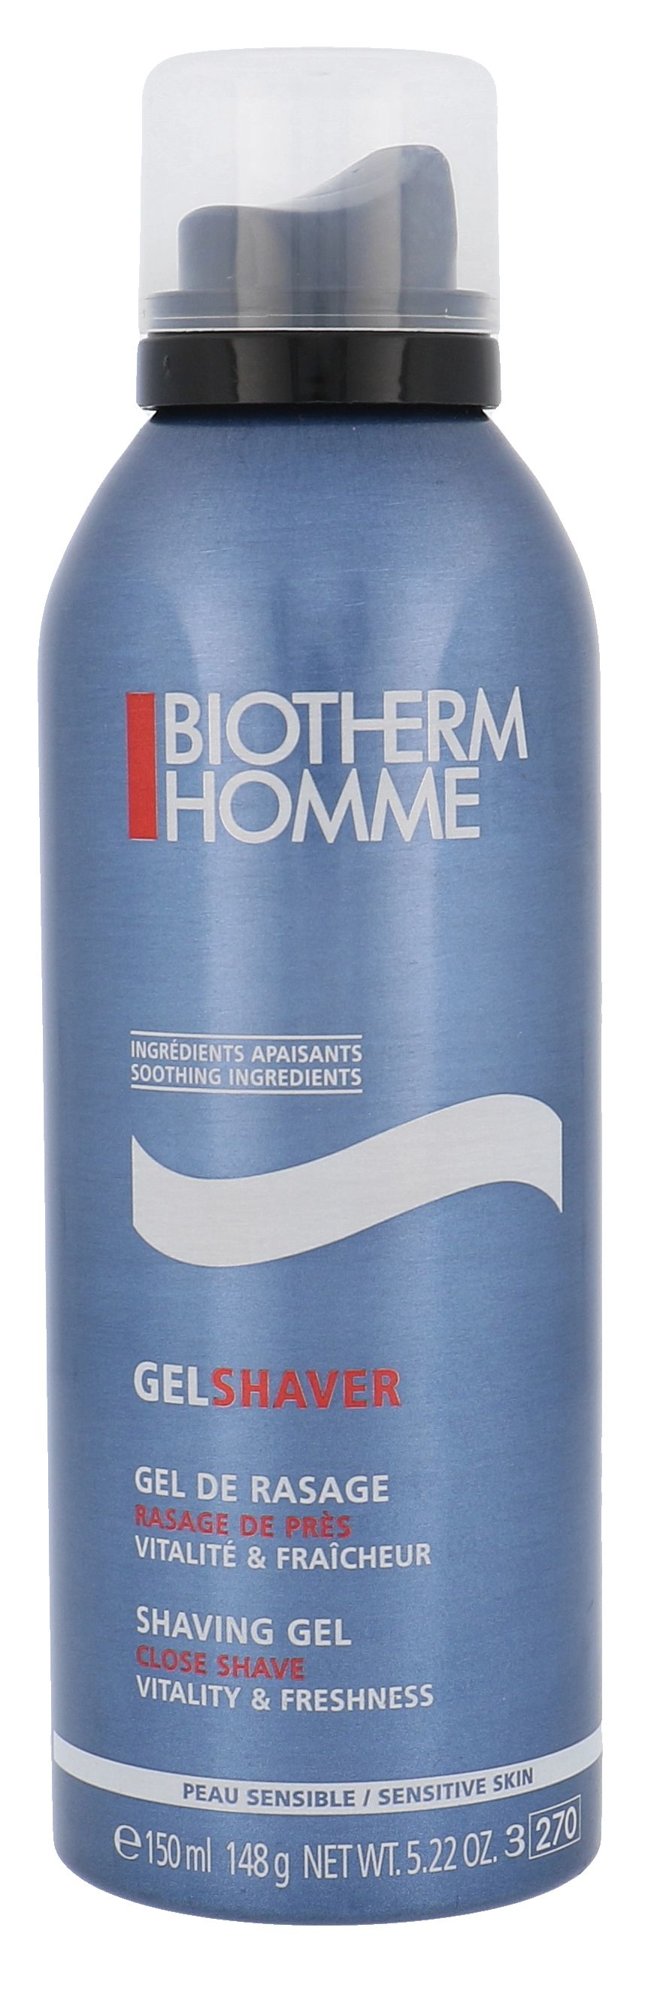 Biotherm Homme Gel Shaver skutimosi gelis